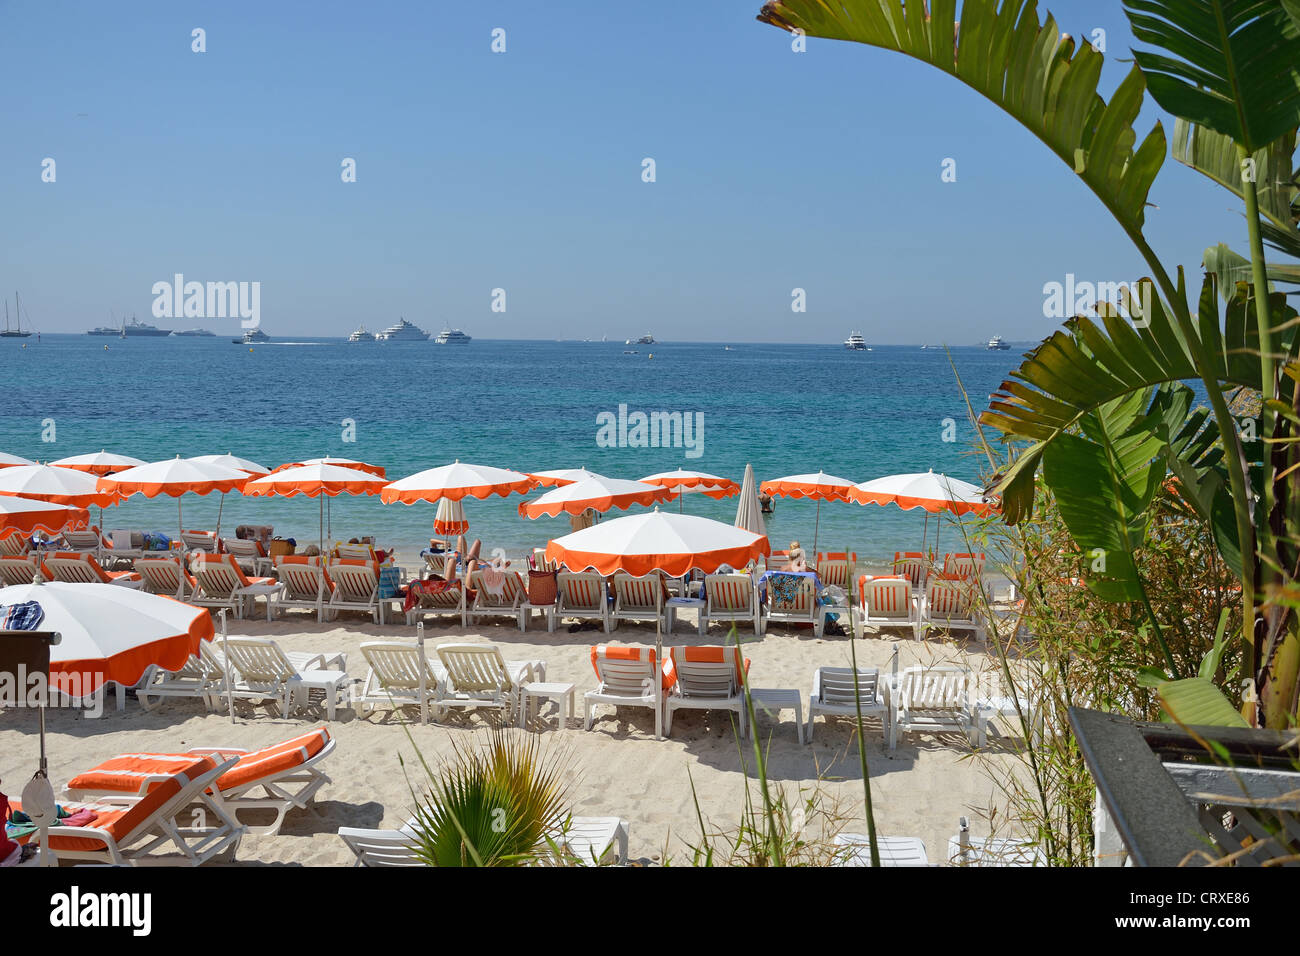 Place Juanita beach and restaurant, Juan-les-Pins, Côte d'Azur, Alpes-Maritimes, Provence-Alpes-Côte d'Azur, France Stock Photo